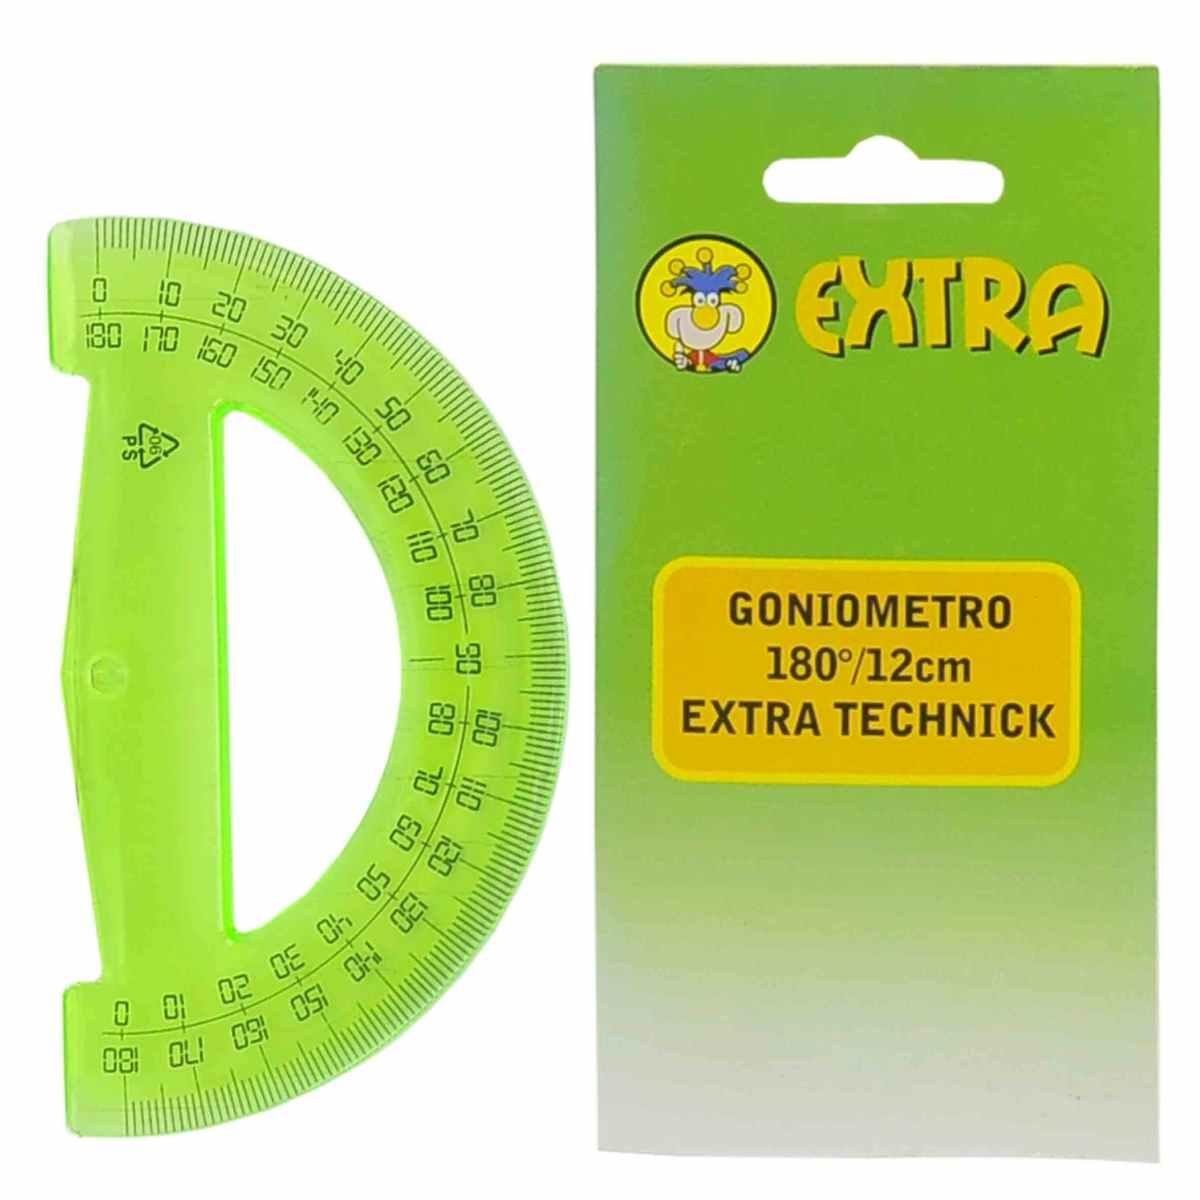 Goniometro Extra cm.12x7 180